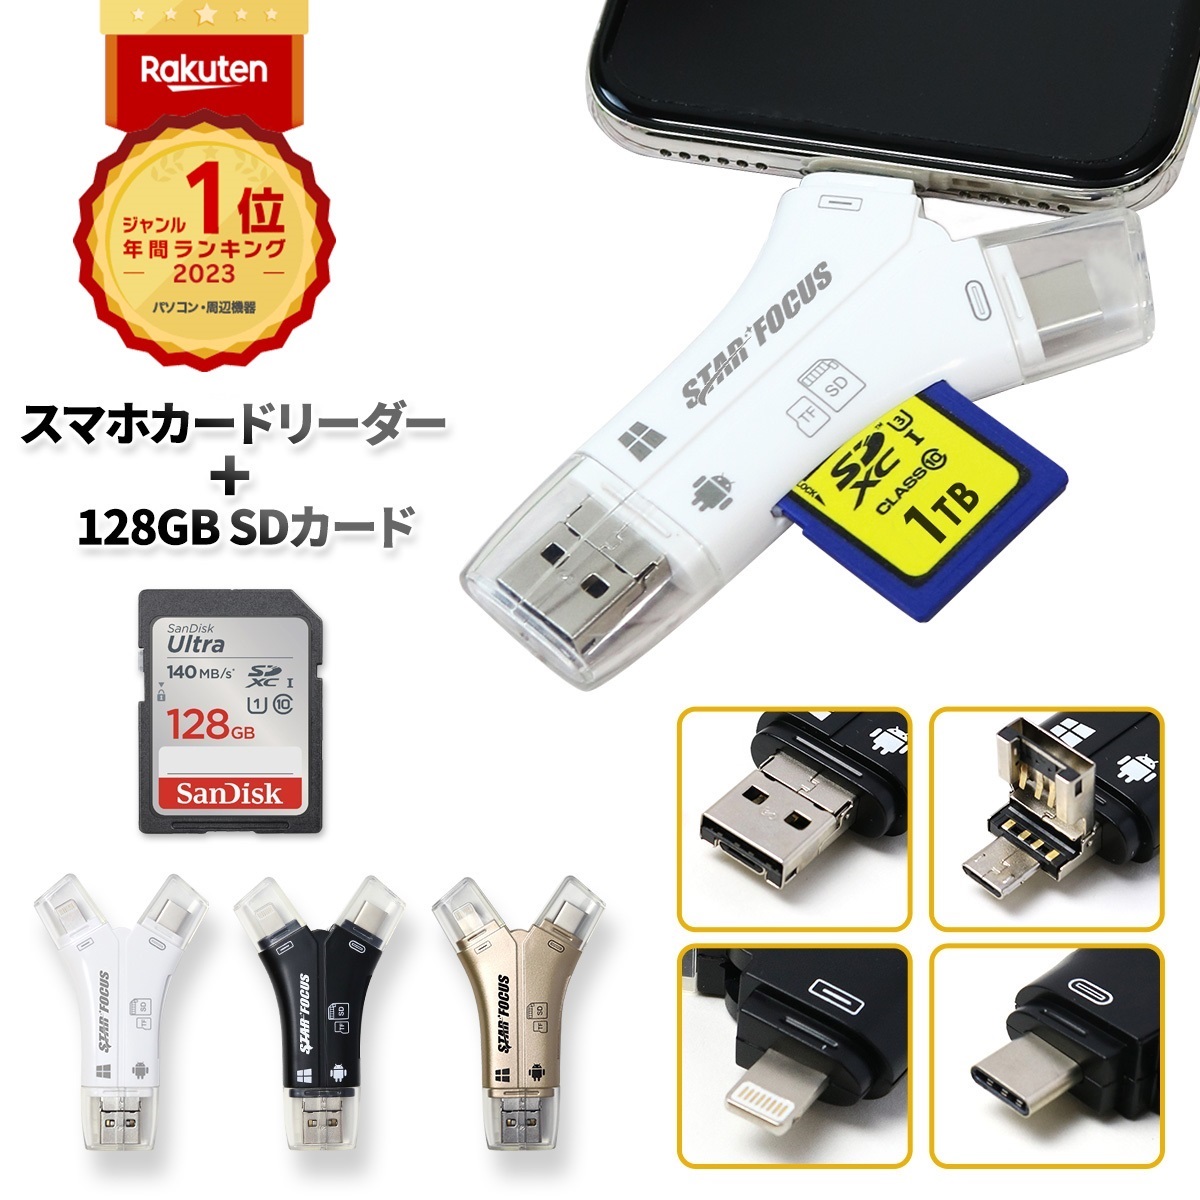 スマホの溜まった写真の整理に 最新な SDカードリーダー iPhone バックアップ USB USBメモリ 写真 人気ブレゼント マイクロSDカードリーダー スマホ SDカードカメラリーダー 日本語取説付 microSDカードリーダー 6ヶ月保証 携帯 保存